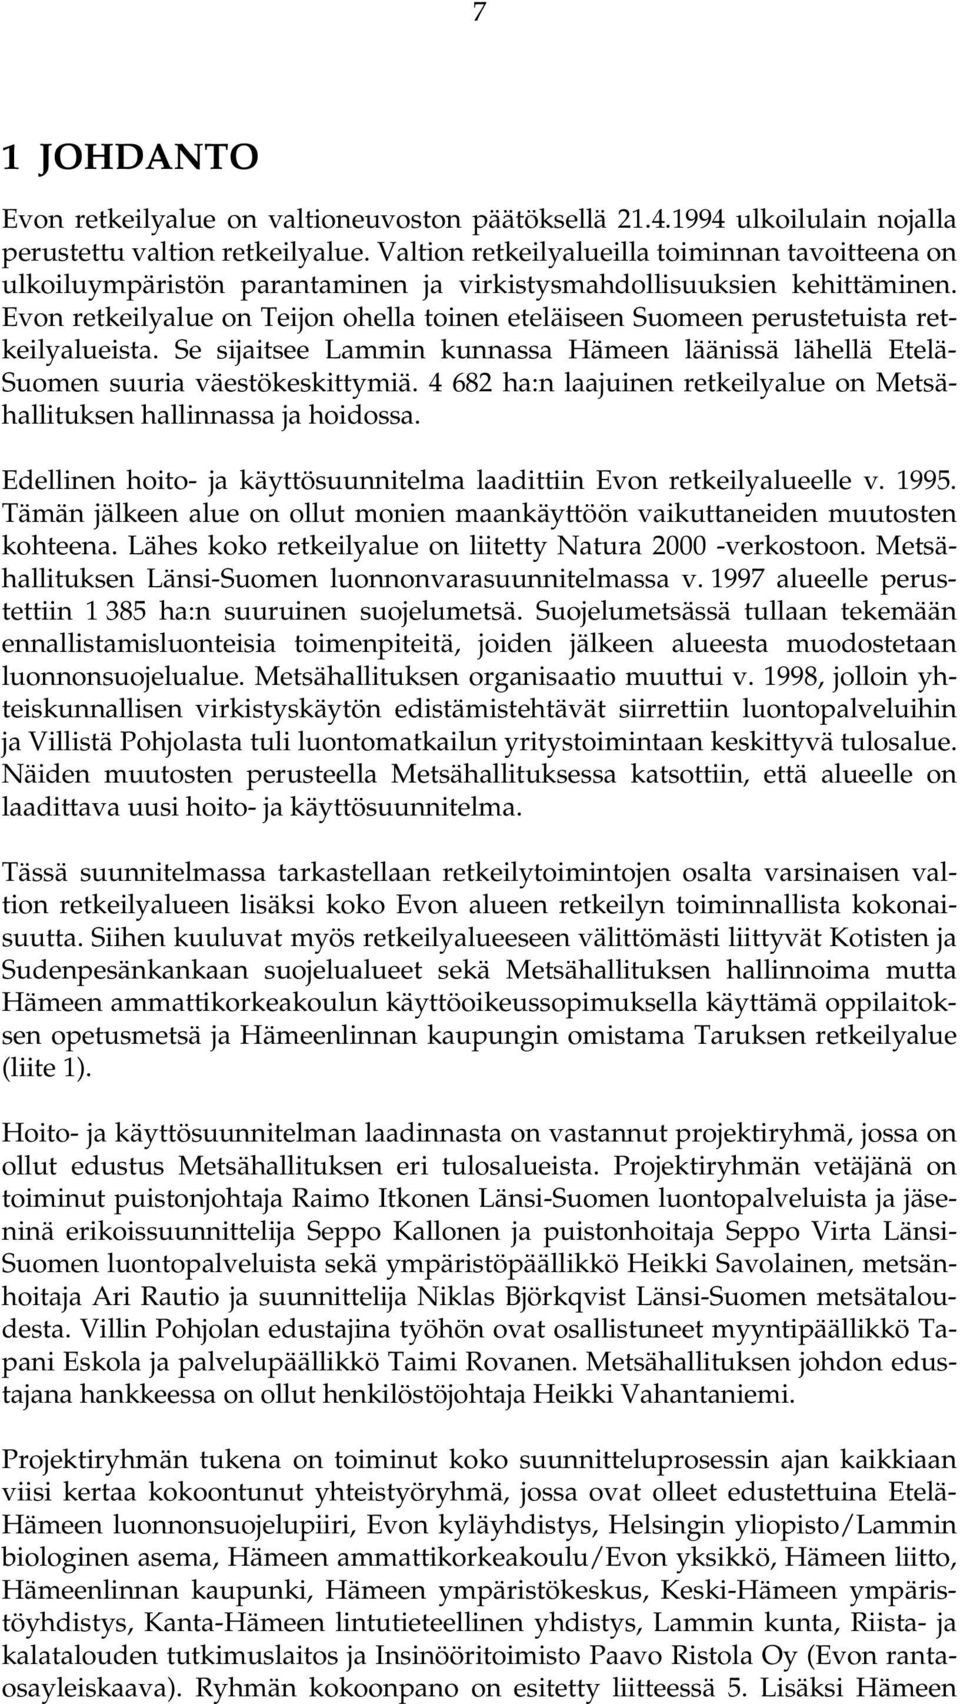 Evon retkeilyalue on Teijon ohella toinen eteläiseen Suomeen perustetuista retkeilyalueista. Se sijaitsee Lammin kunnassa Hämeen läänissä lähellä Etelä- Suomen suuria väestökeskittymiä.